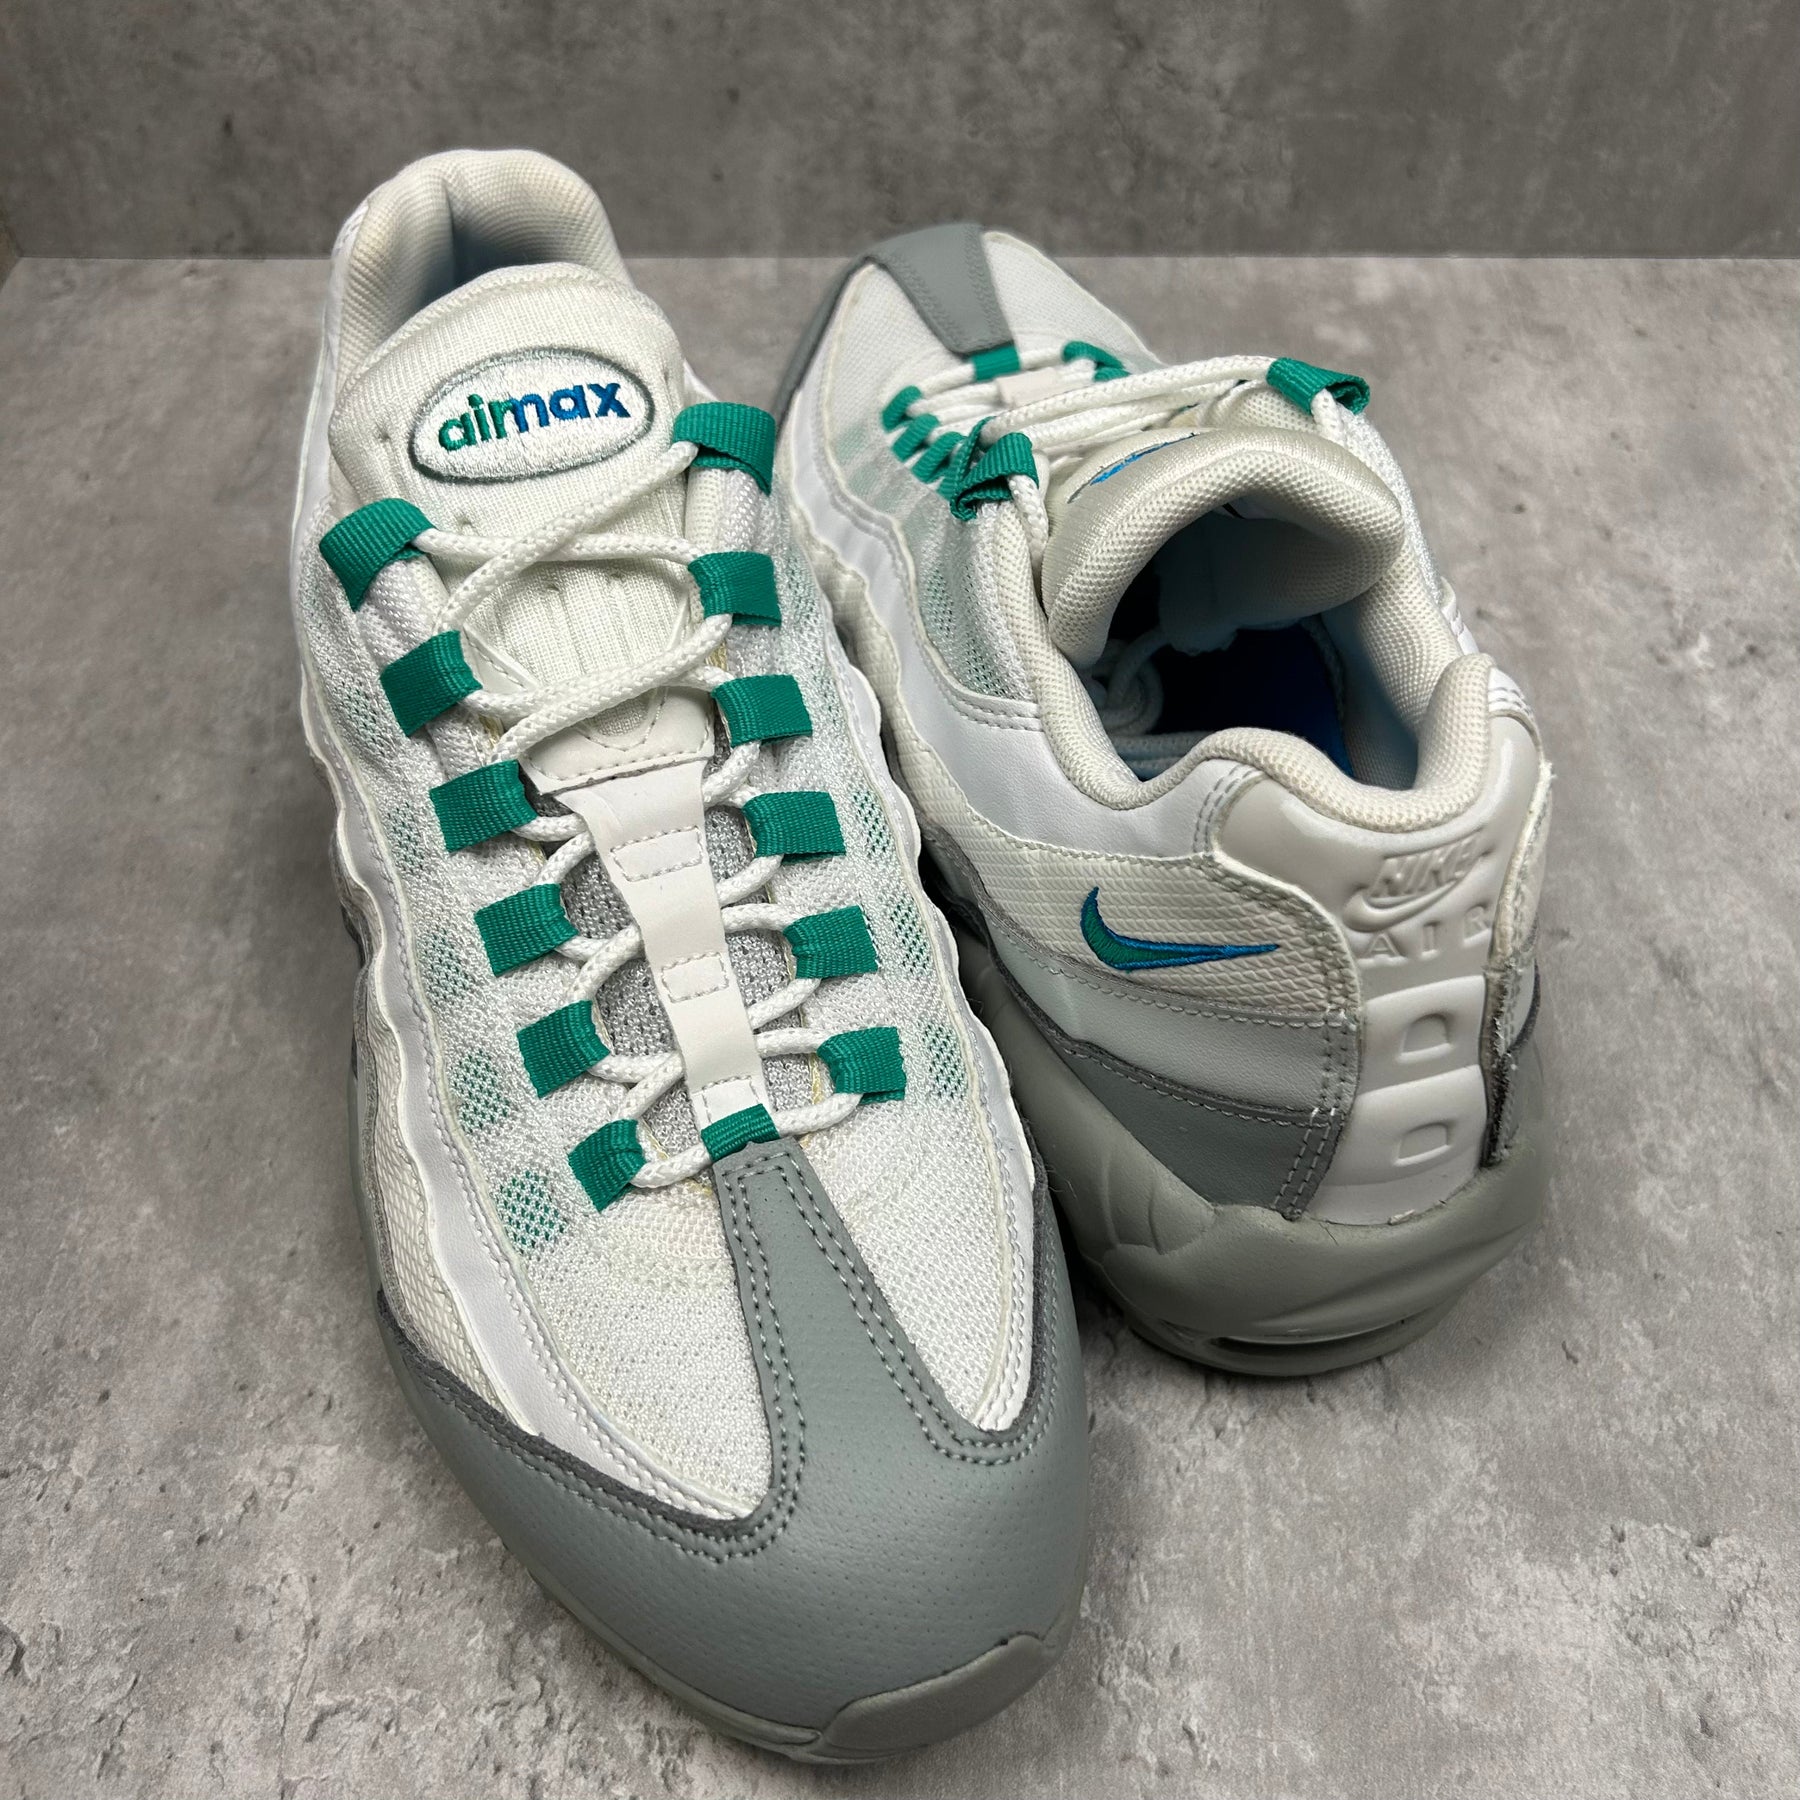 Nike Airmax 95 Clear Emerald